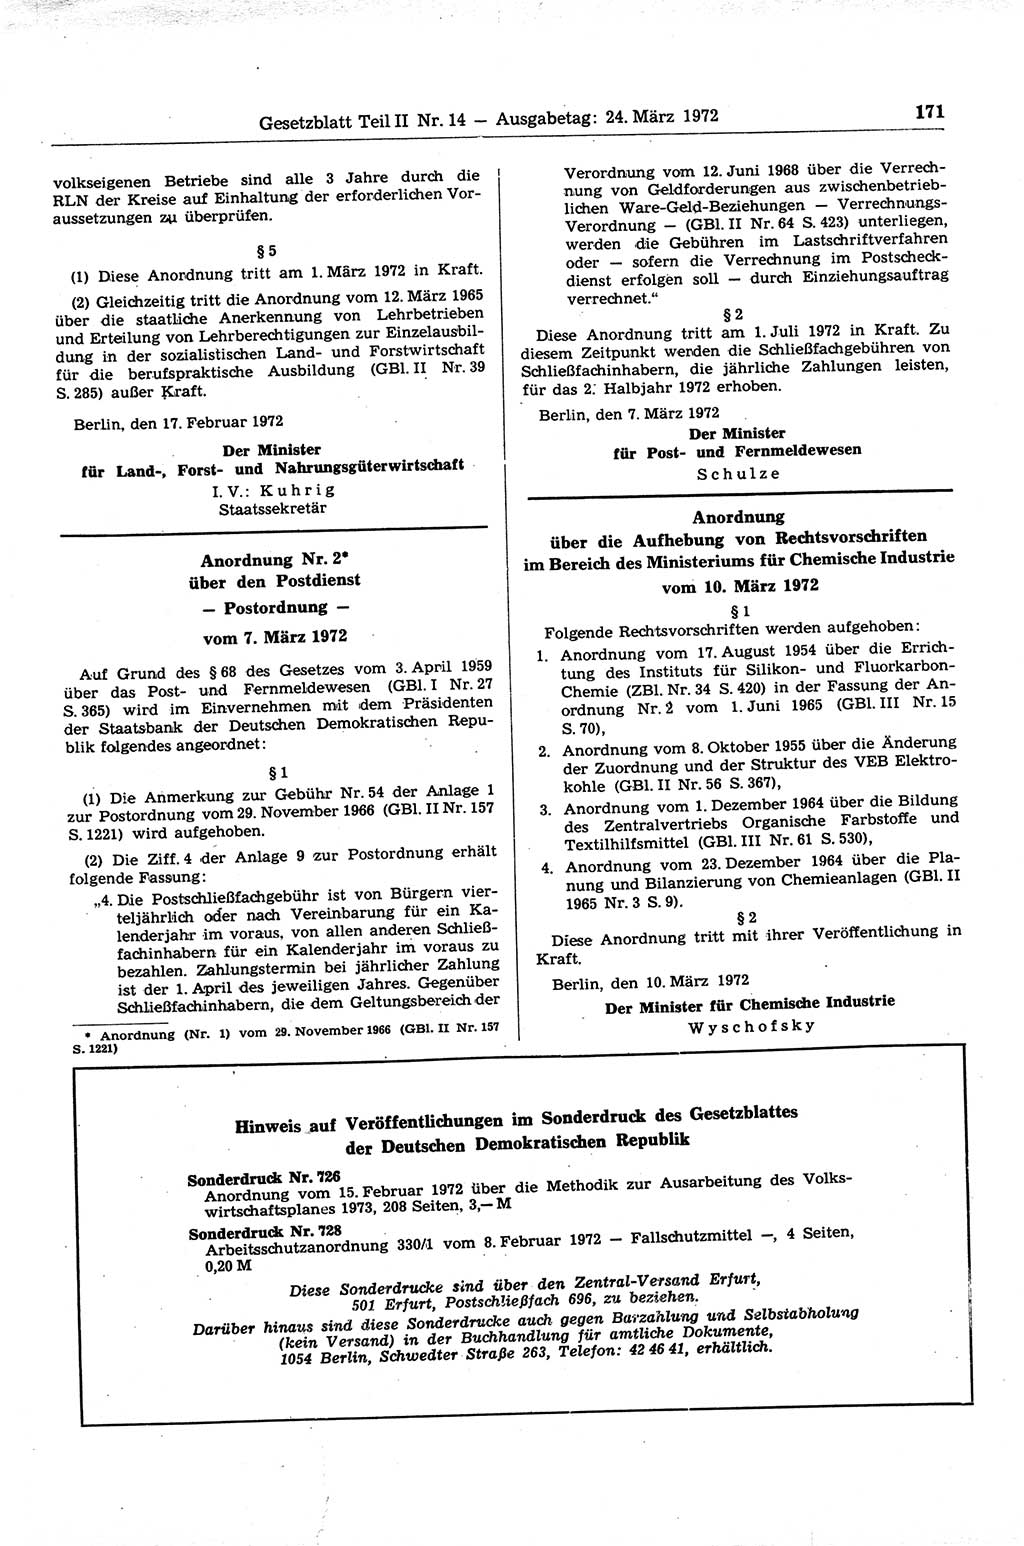 Gesetzblatt (GBl.) der Deutschen Demokratischen Republik (DDR) Teil ⅠⅠ 1972, Seite 171 (GBl. DDR ⅠⅠ 1972, S. 171)